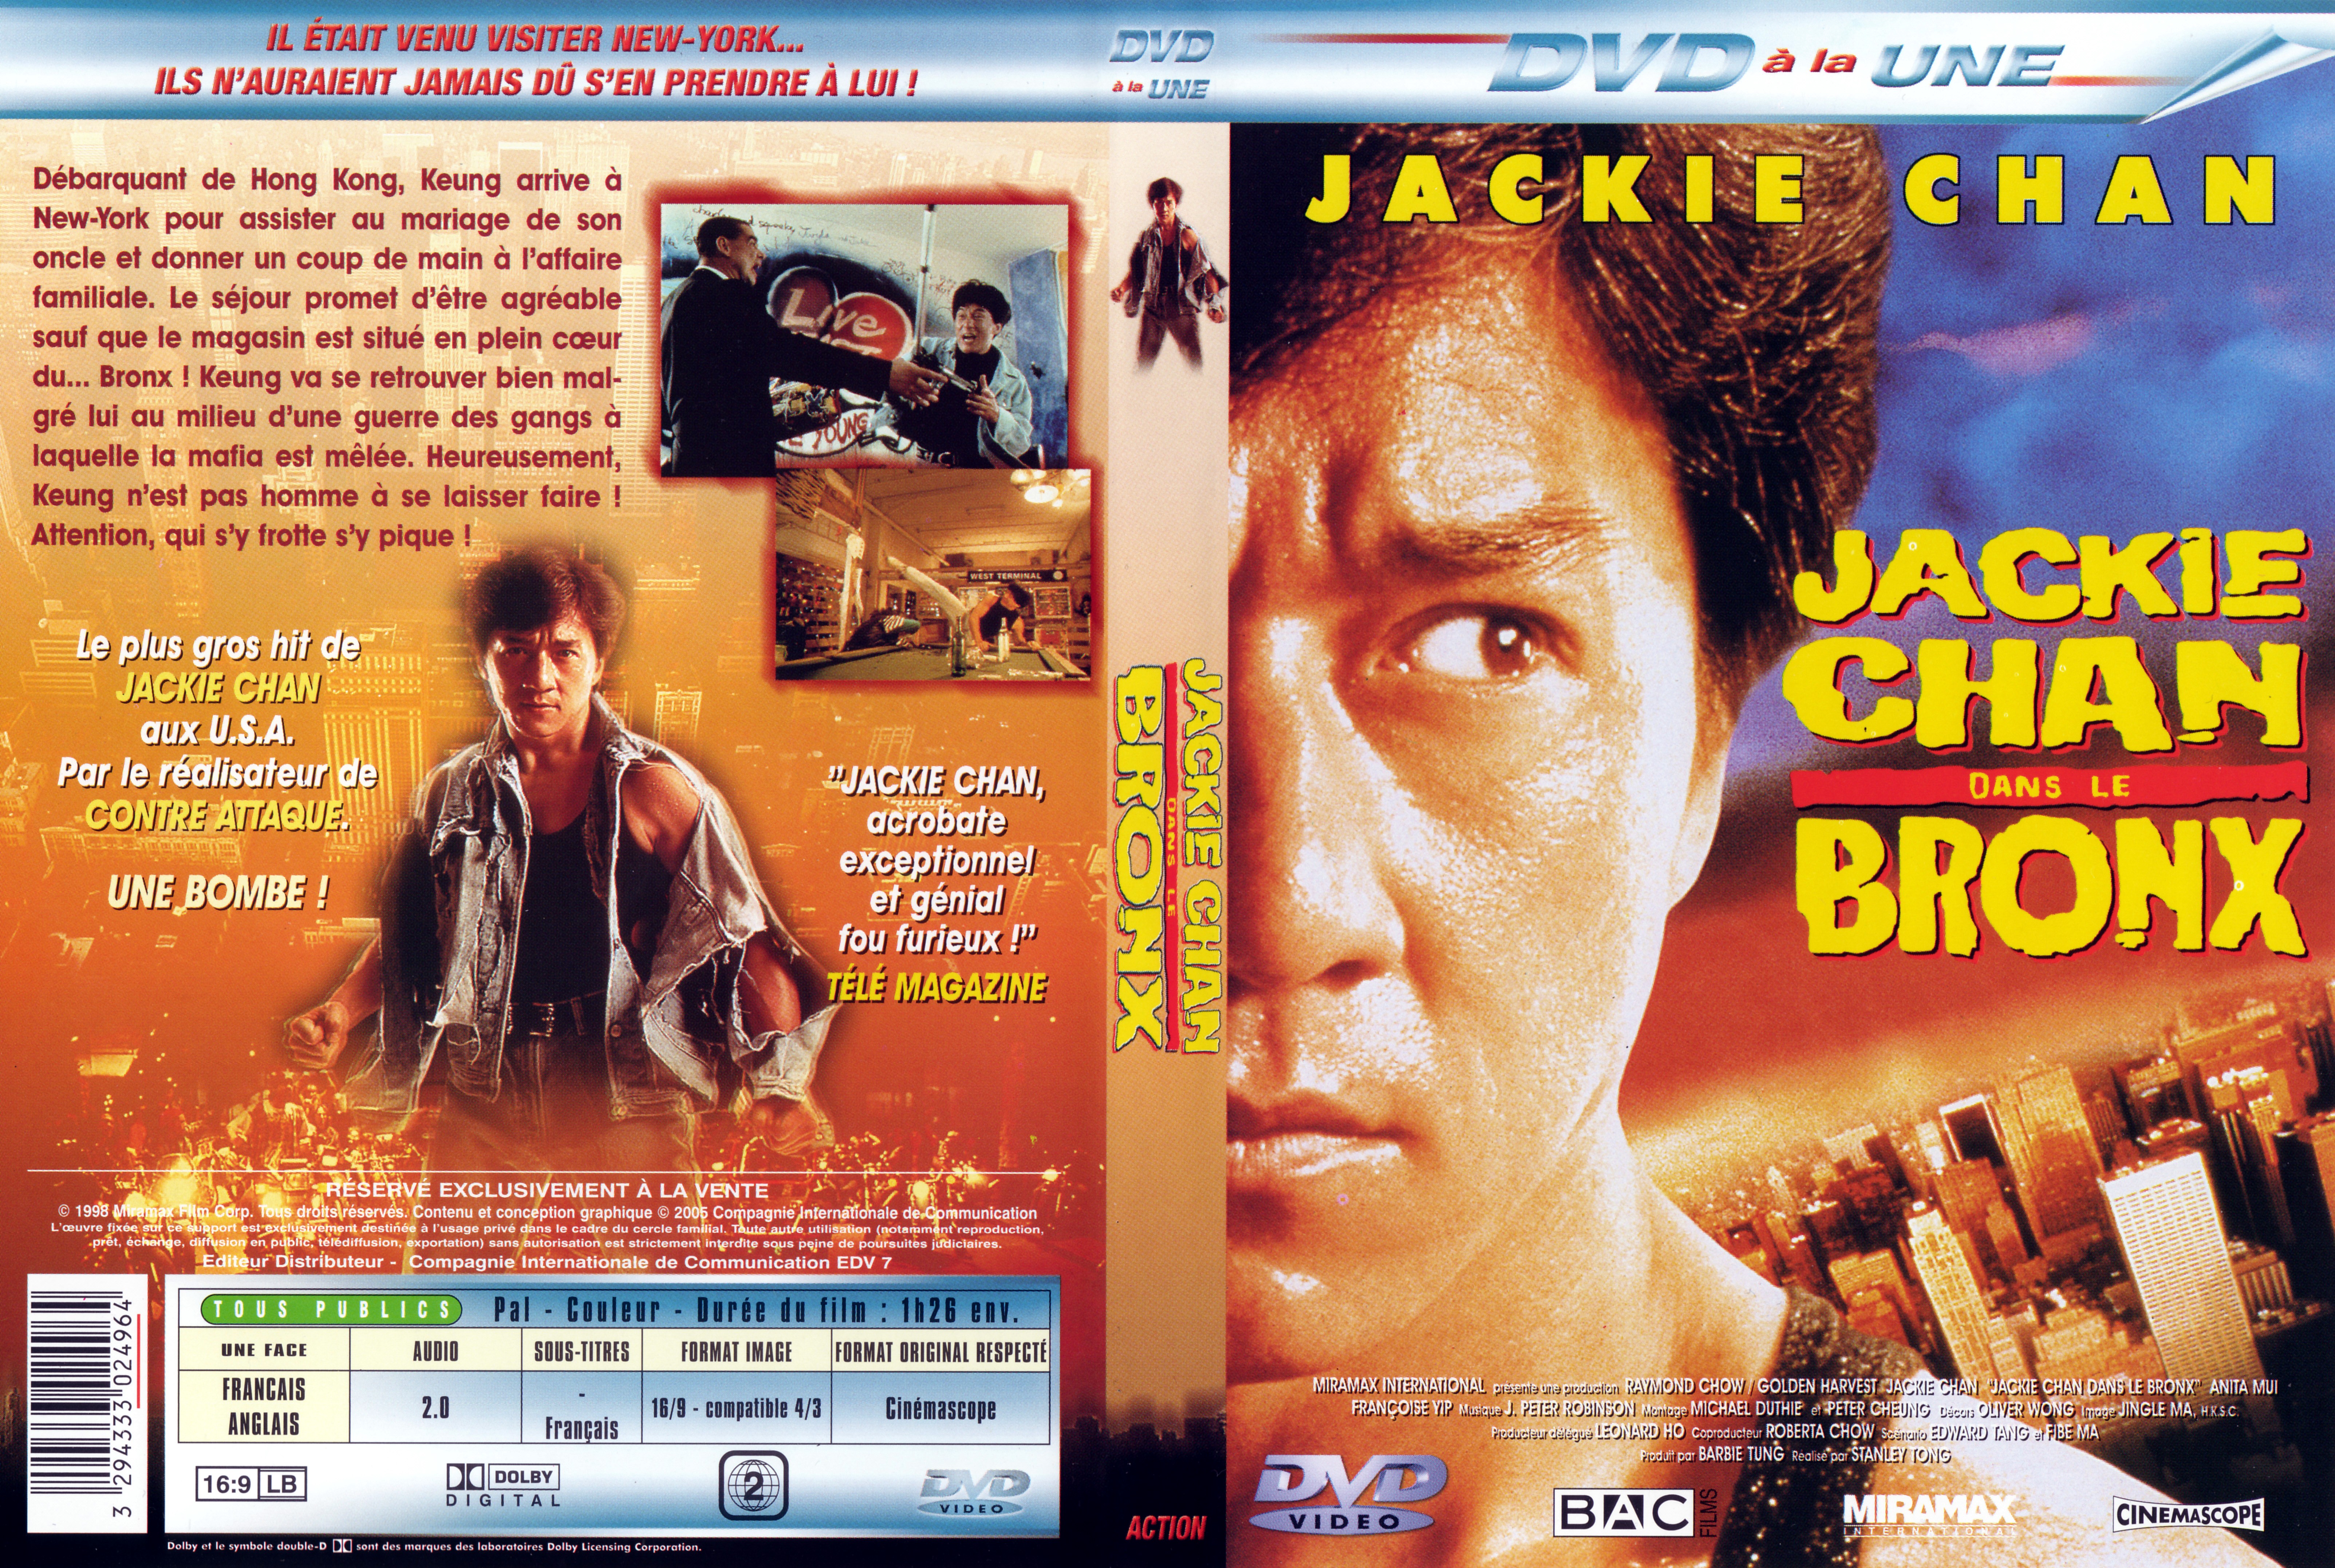 Jaquette DVD Jackie Chan dans le Bronx v2